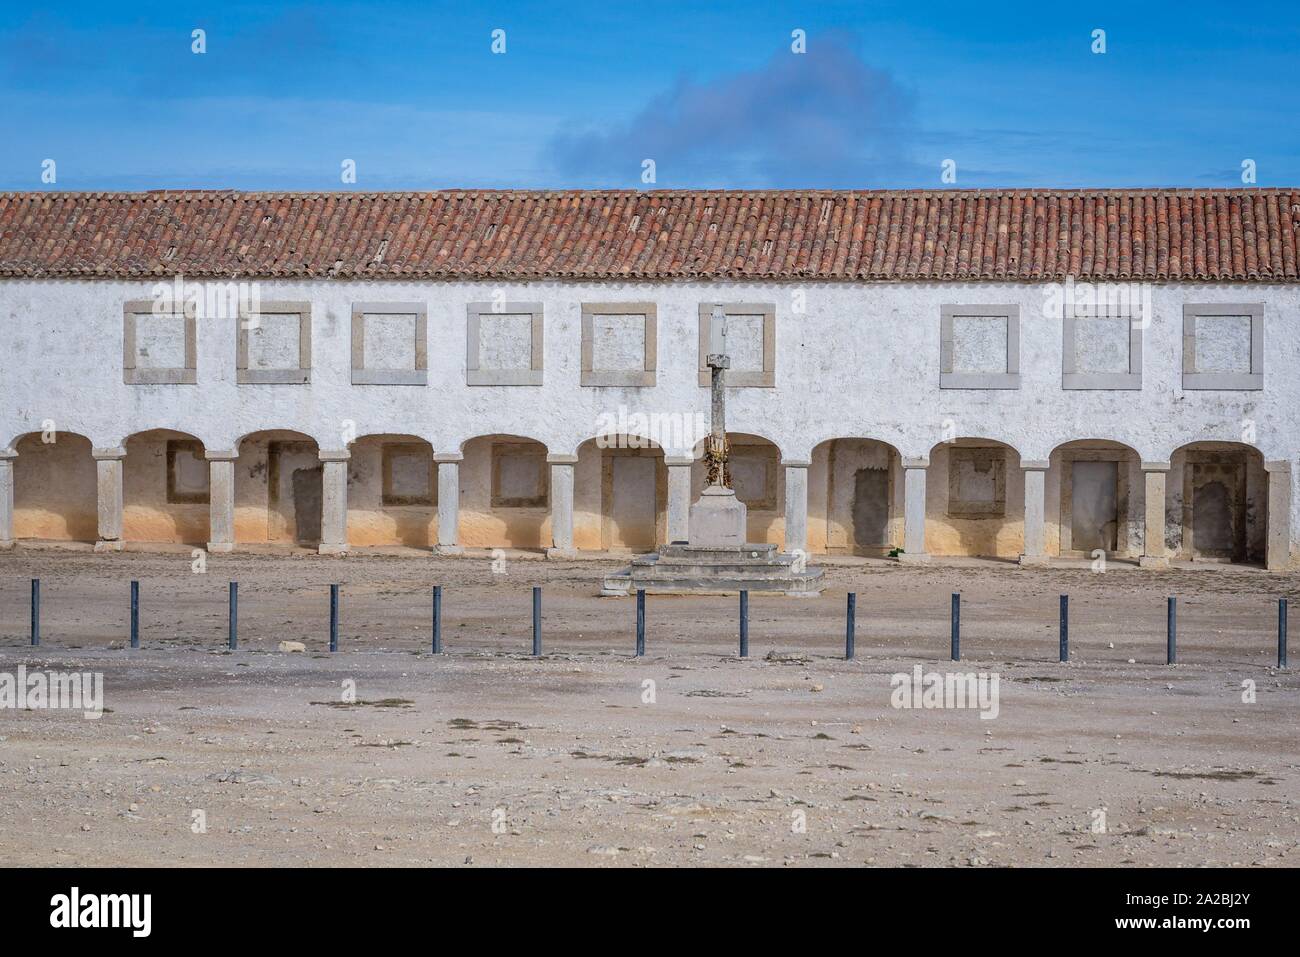 Église du 15ème siècle et sanctuaire de Nossa Senhora do Cabo sur Cabo Espichel cap sur la côte ouest près de Seisimbra ville au Portugal. Banque D'Images